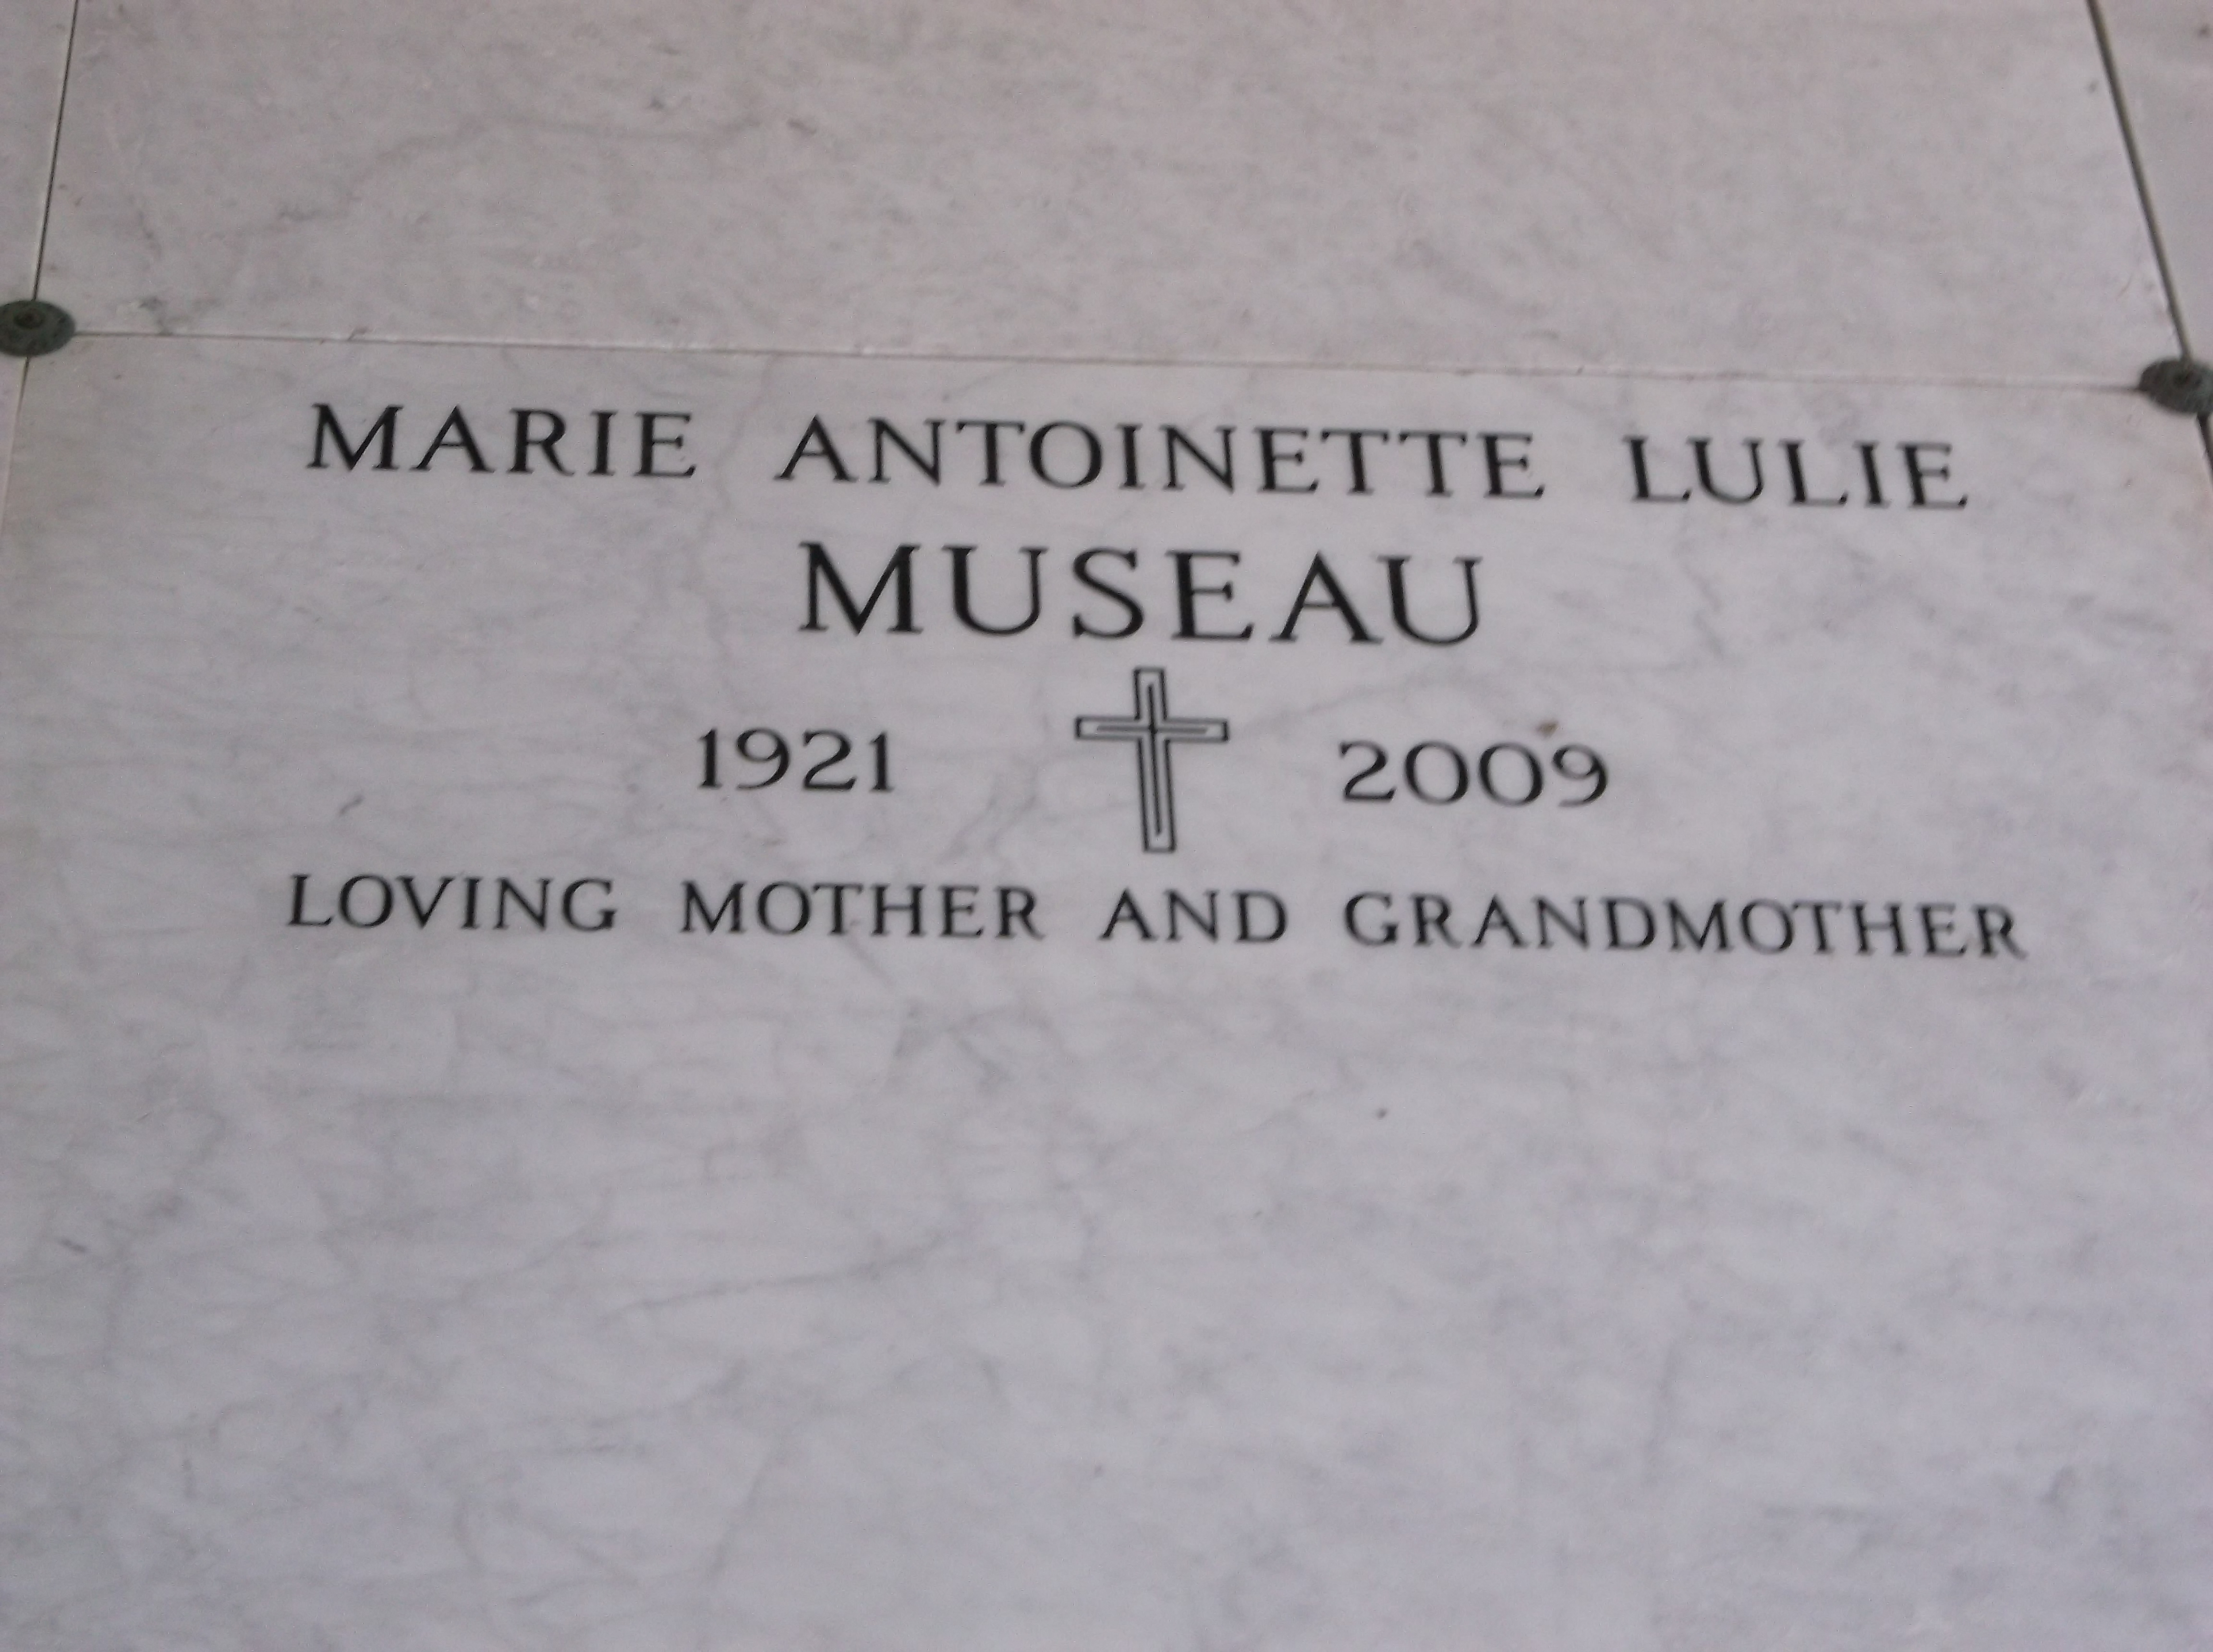 Marie Antoinette Lulie Museau